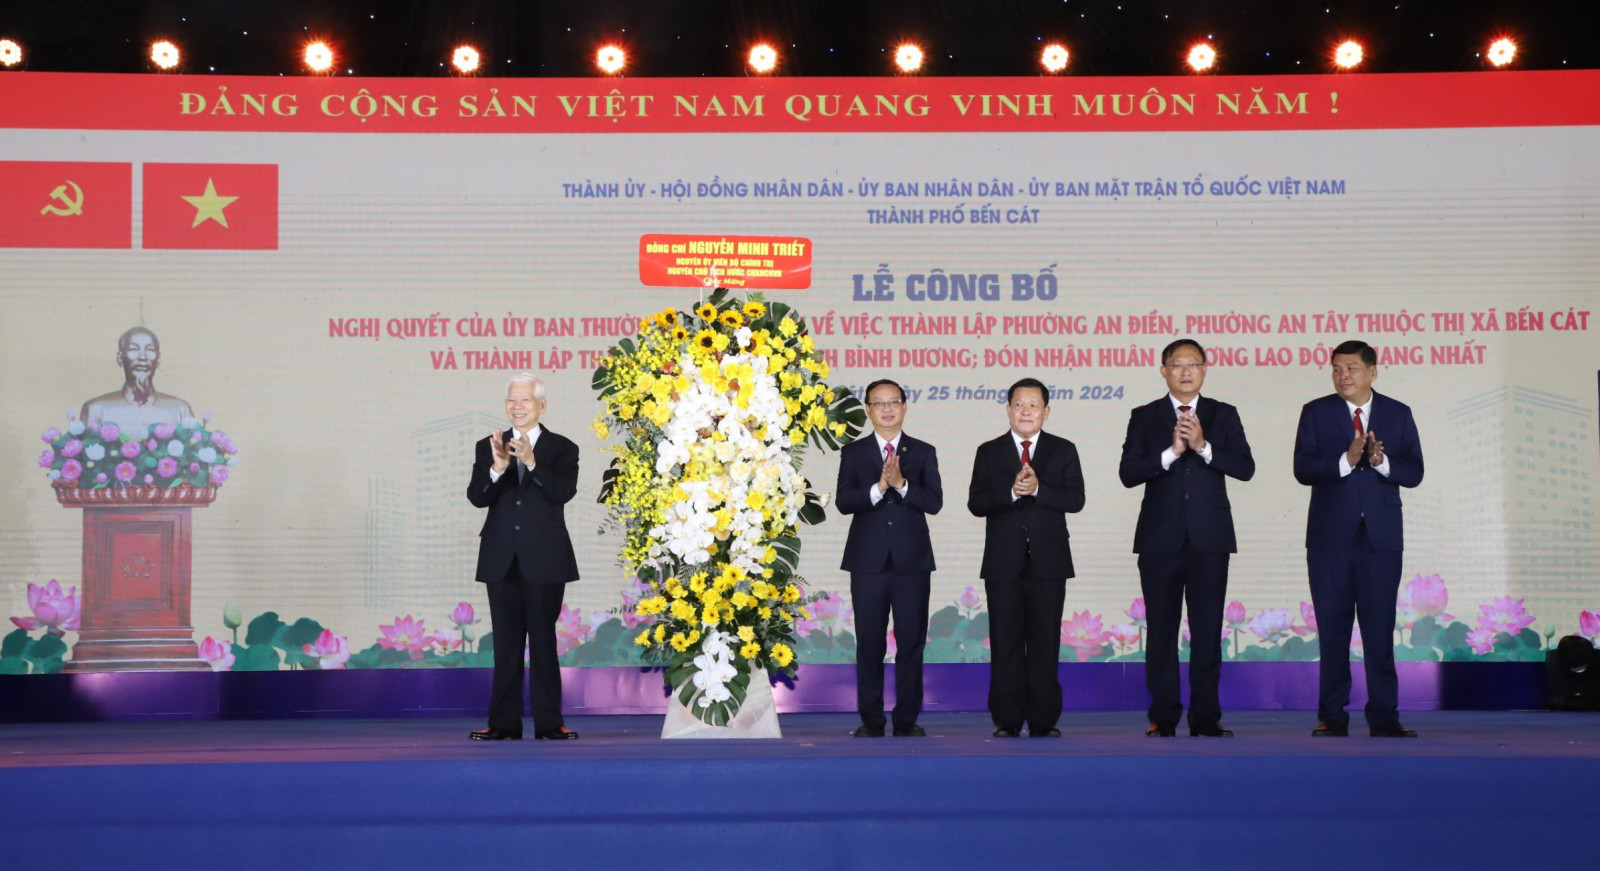 Đồng chí Nguyễn Minh Triết tặng lẵng hoa chúc mừng Thành phố Bến Cát.